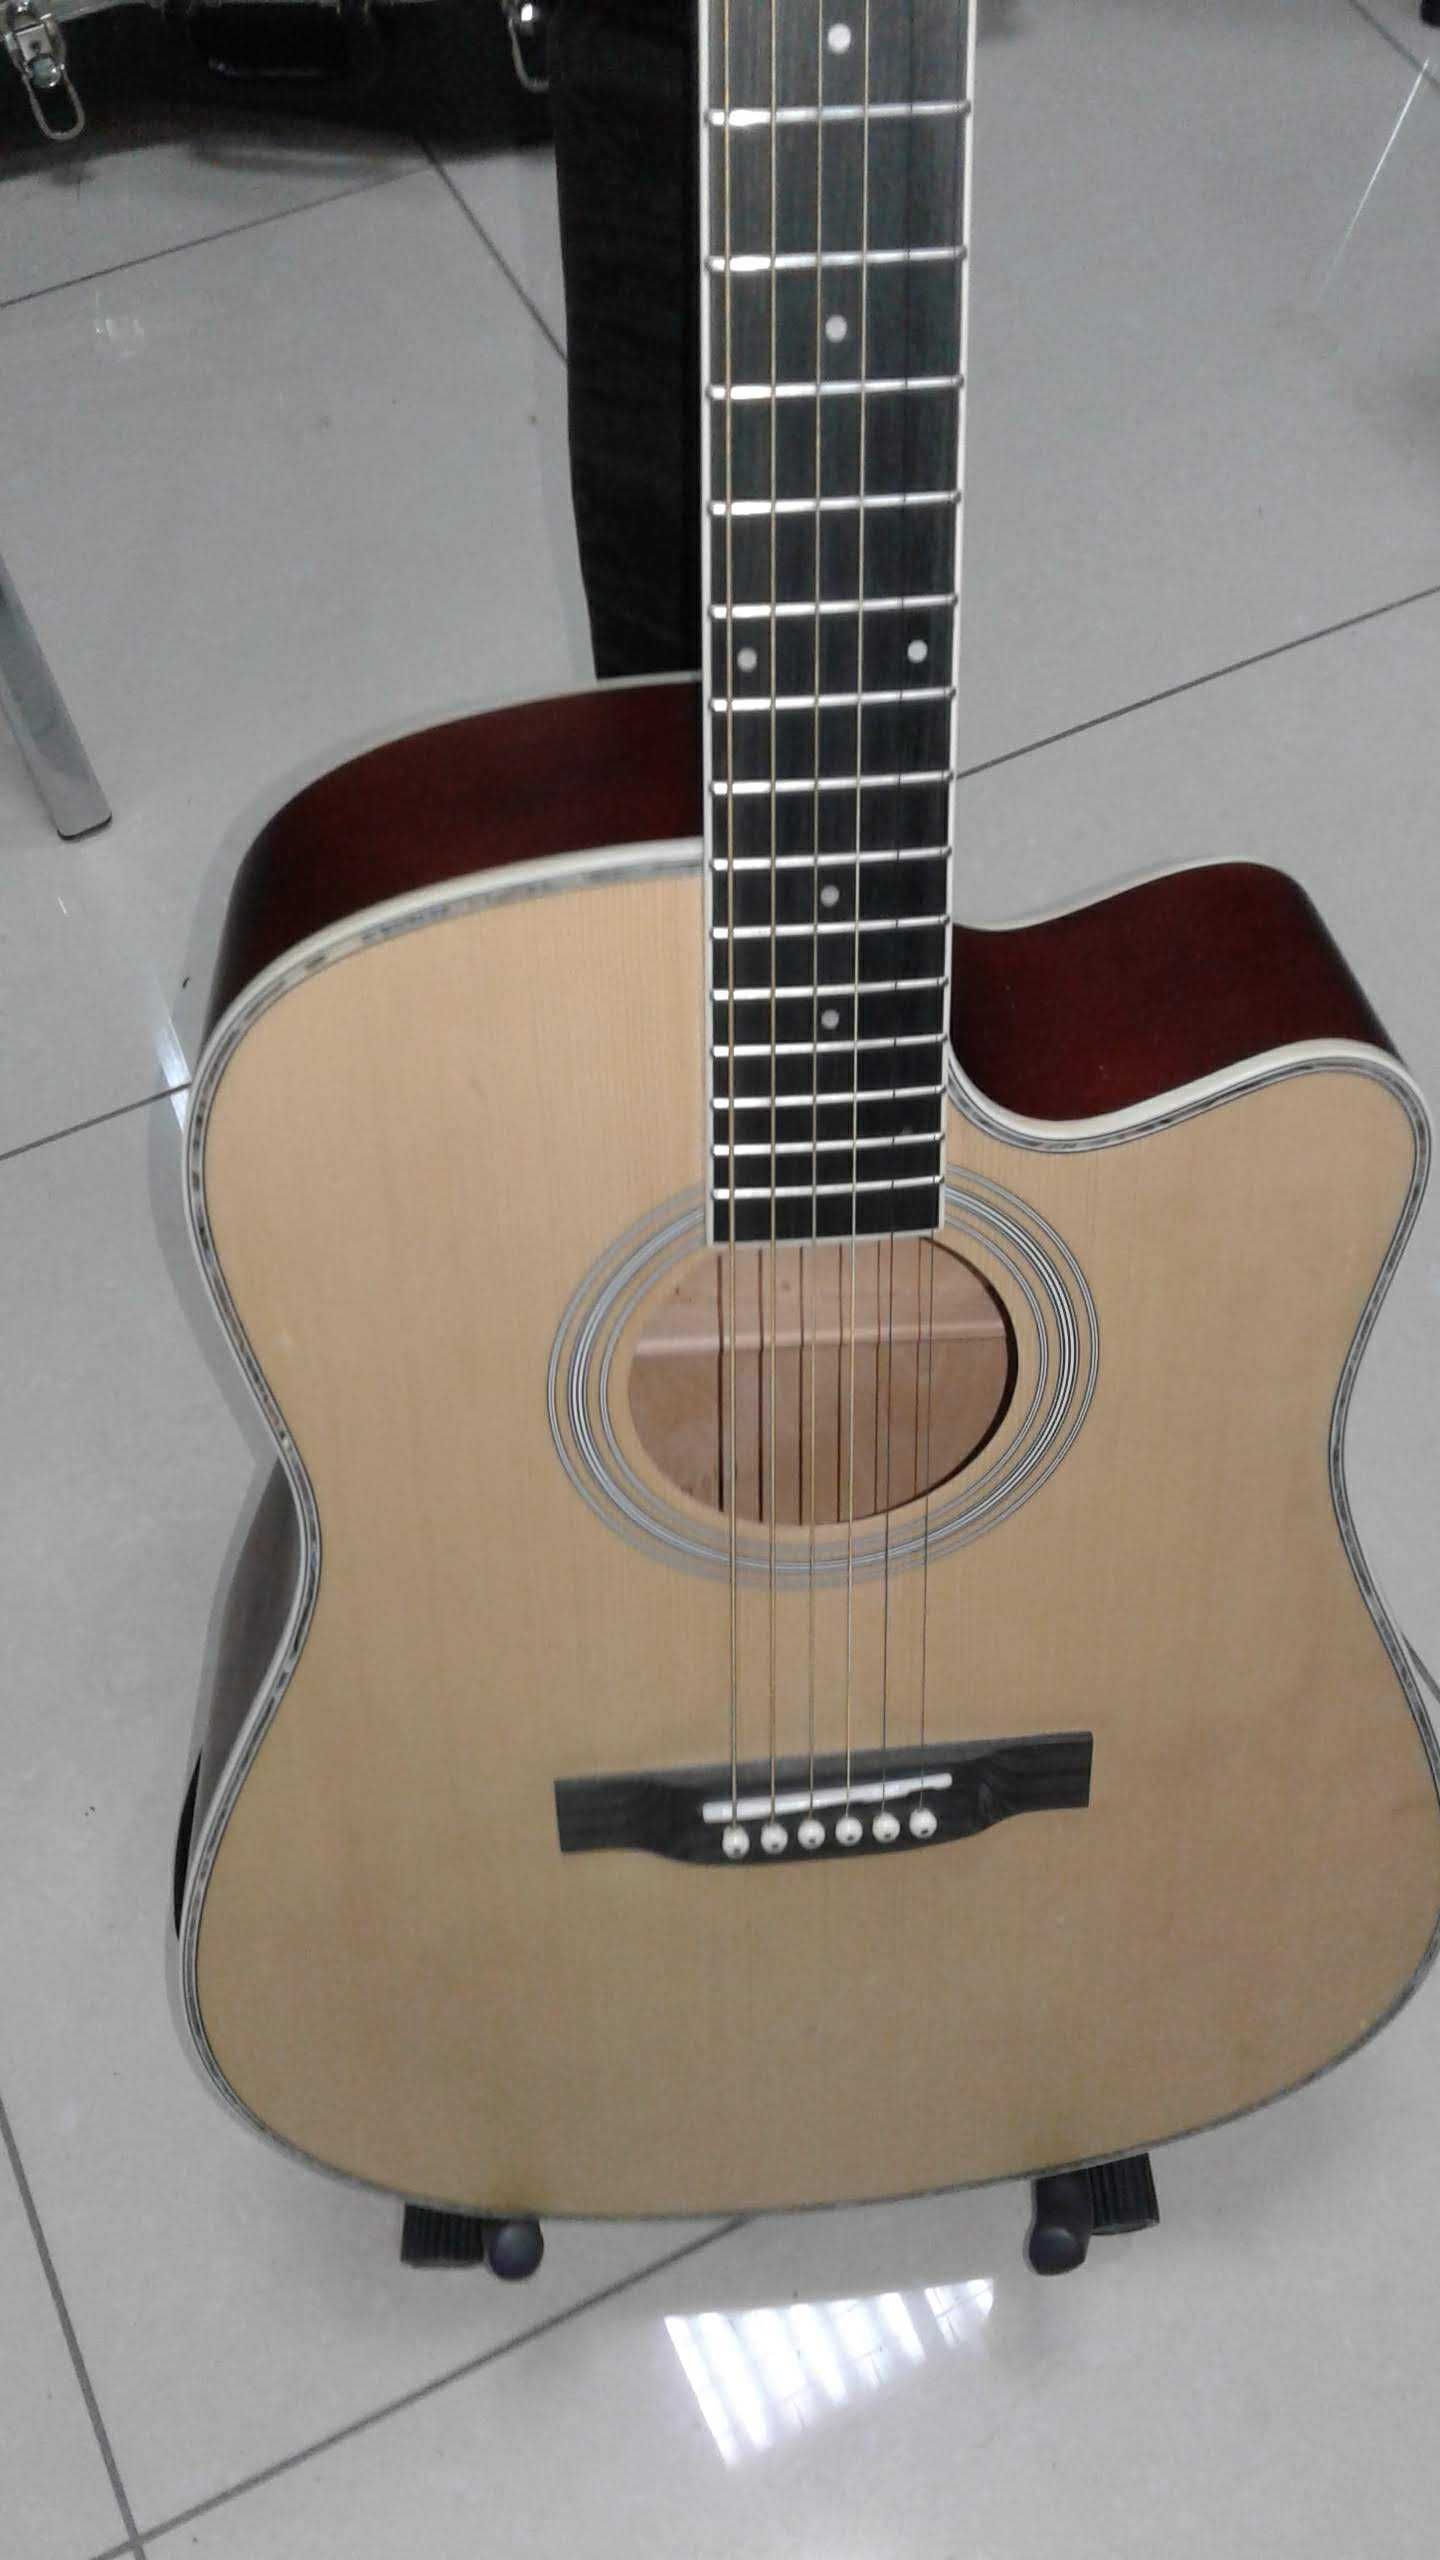 Продам гитару Parksons JB-4111CNAT. В отличном состоянии!